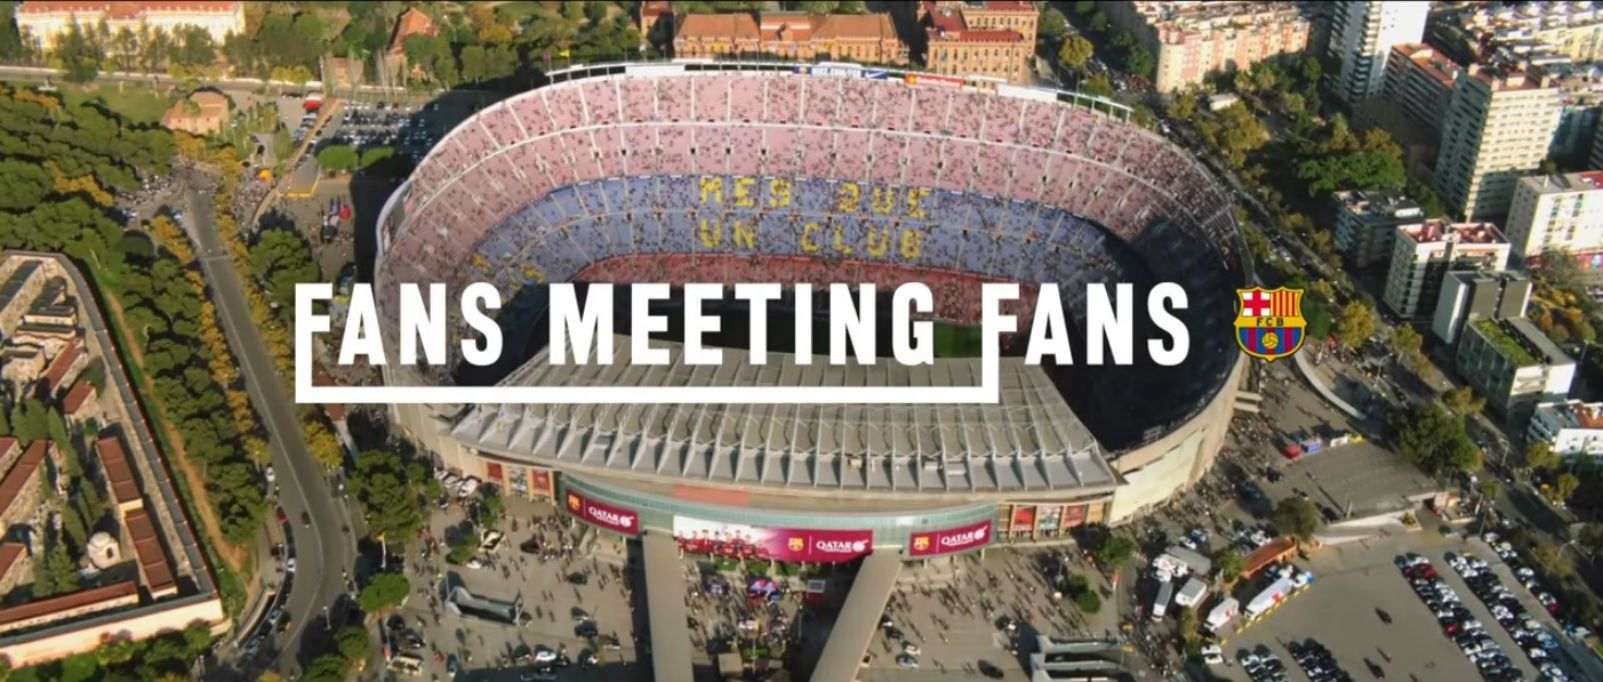 El Barça i Turisme promocionen junts Catalunya, l'Espanyol s'ofèn i el Govern es disculpa